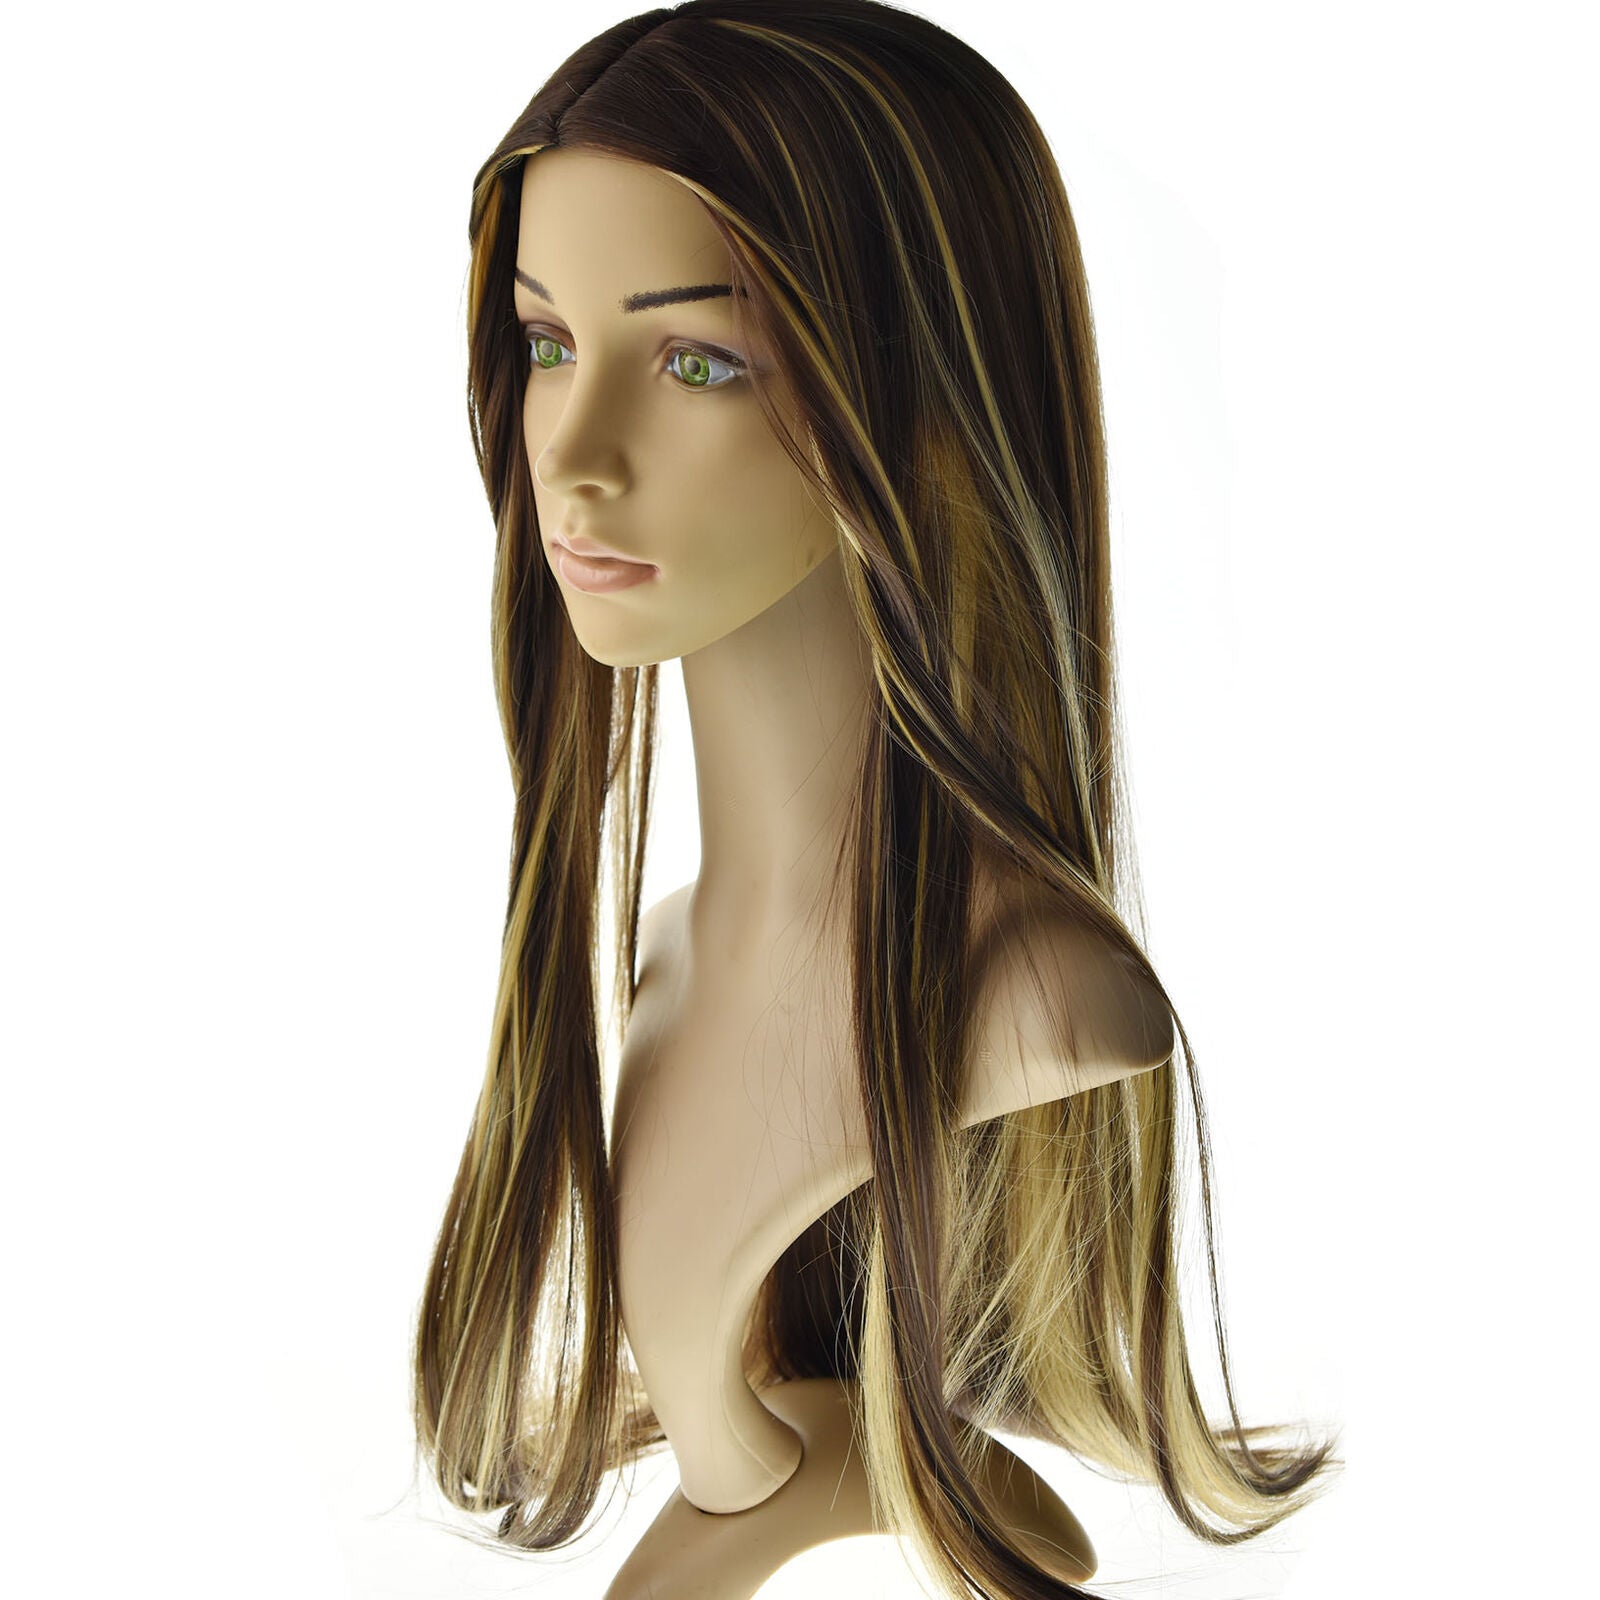 Women's Fashion Brown Highlight Ombre Human Hair Wigs Long Brazilian Hair Wigs